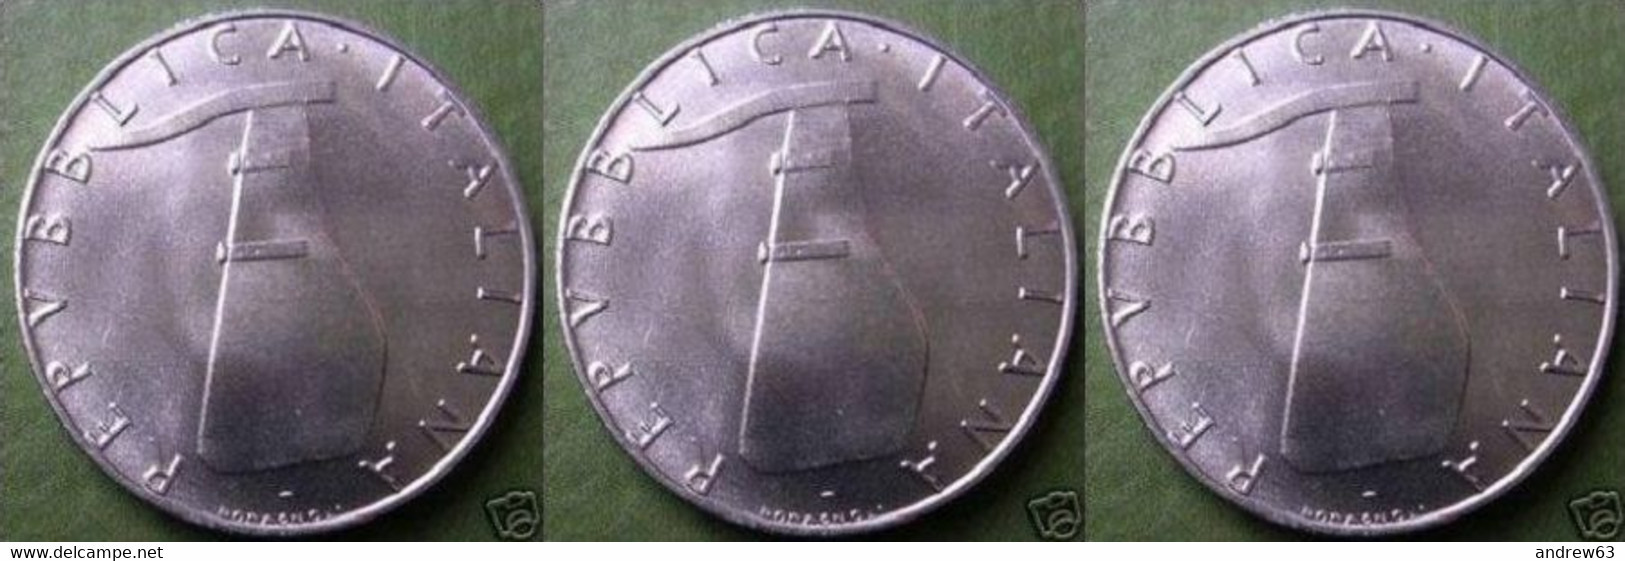 ITALIA - Lire 5 1992 - FDC/Unc Da Rotolino/from Roll 3 Monete/3 Coins - 5 Liras